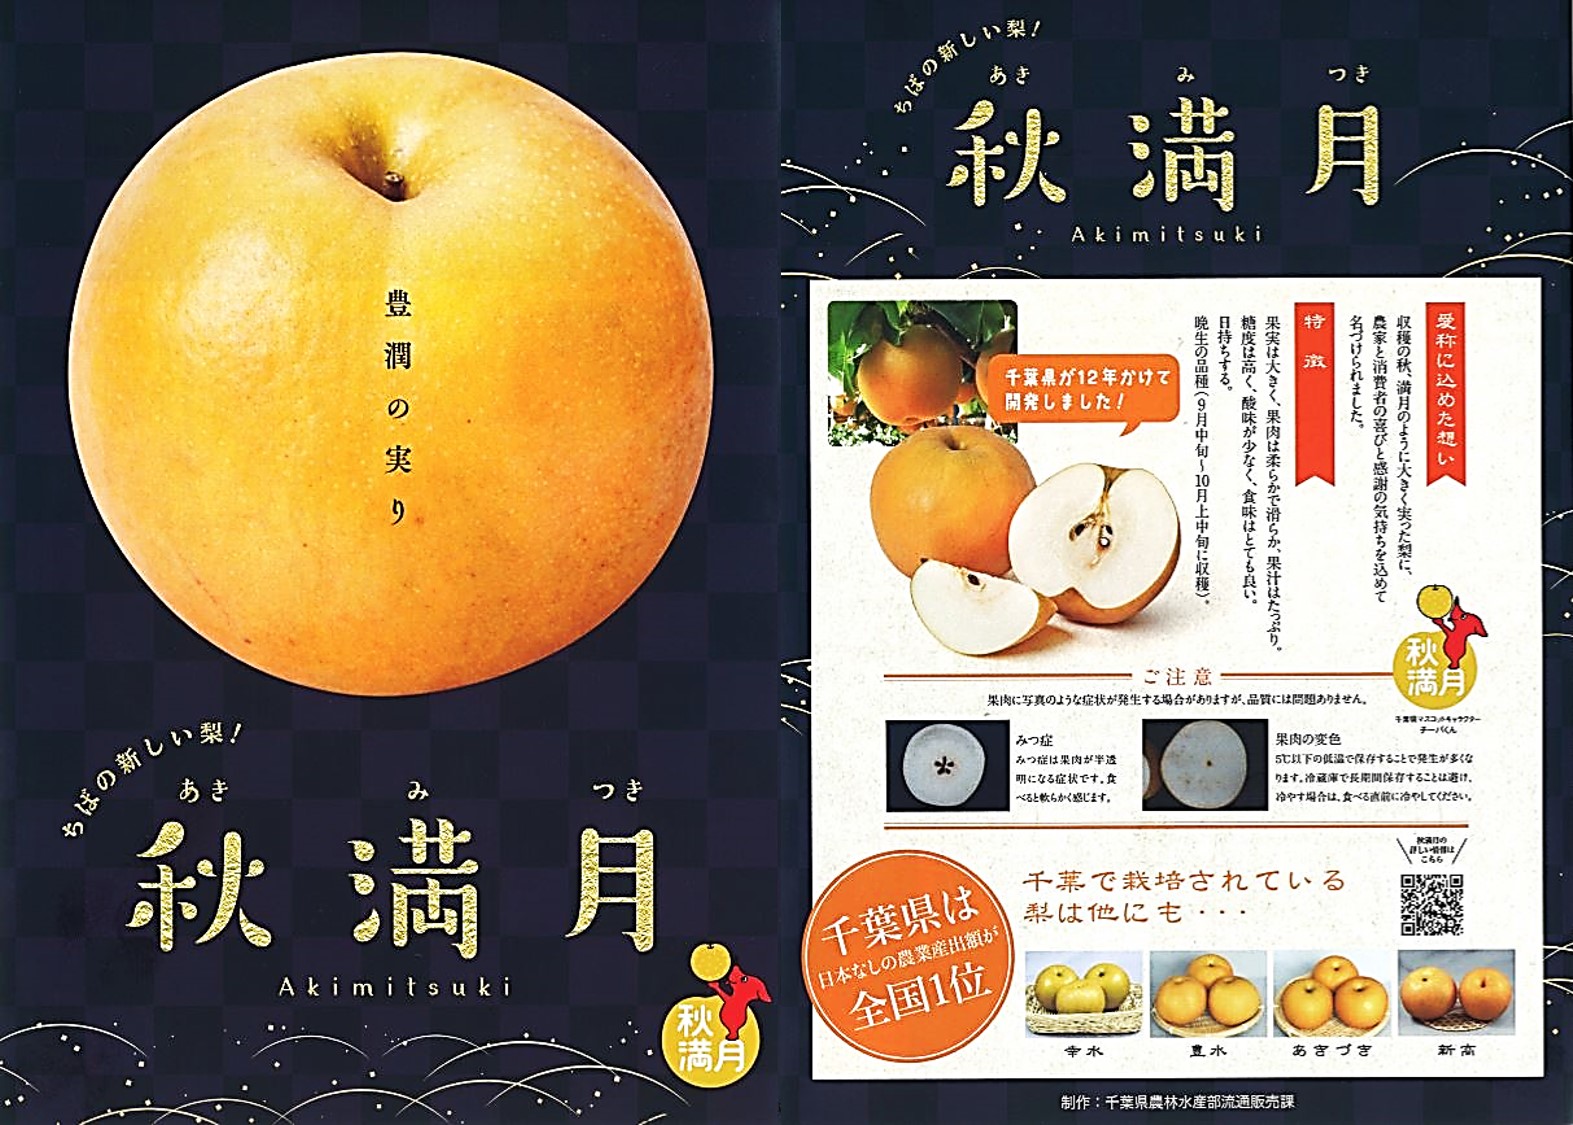 マレーシア・香港向けに千葉県産の新品種の梨「秋満月」を初輸出しました。